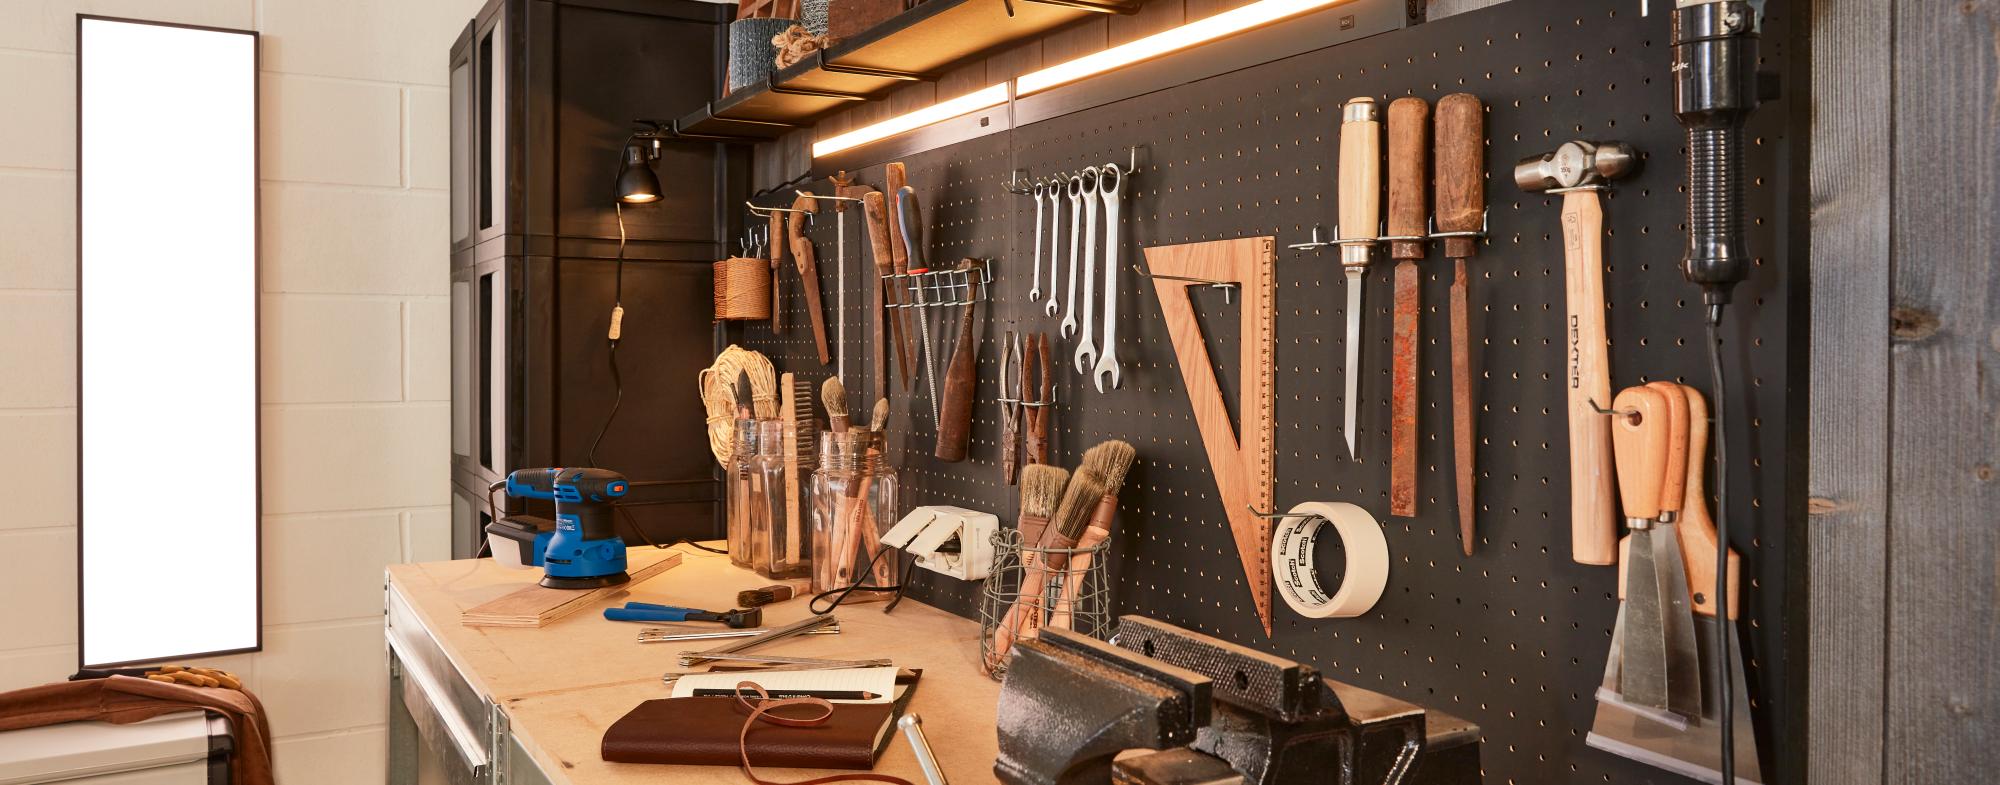 80 idées de rangements d'atelier pour organiser vos outils  Rangement  atelier, Rangement outils, Rangement outil atelier